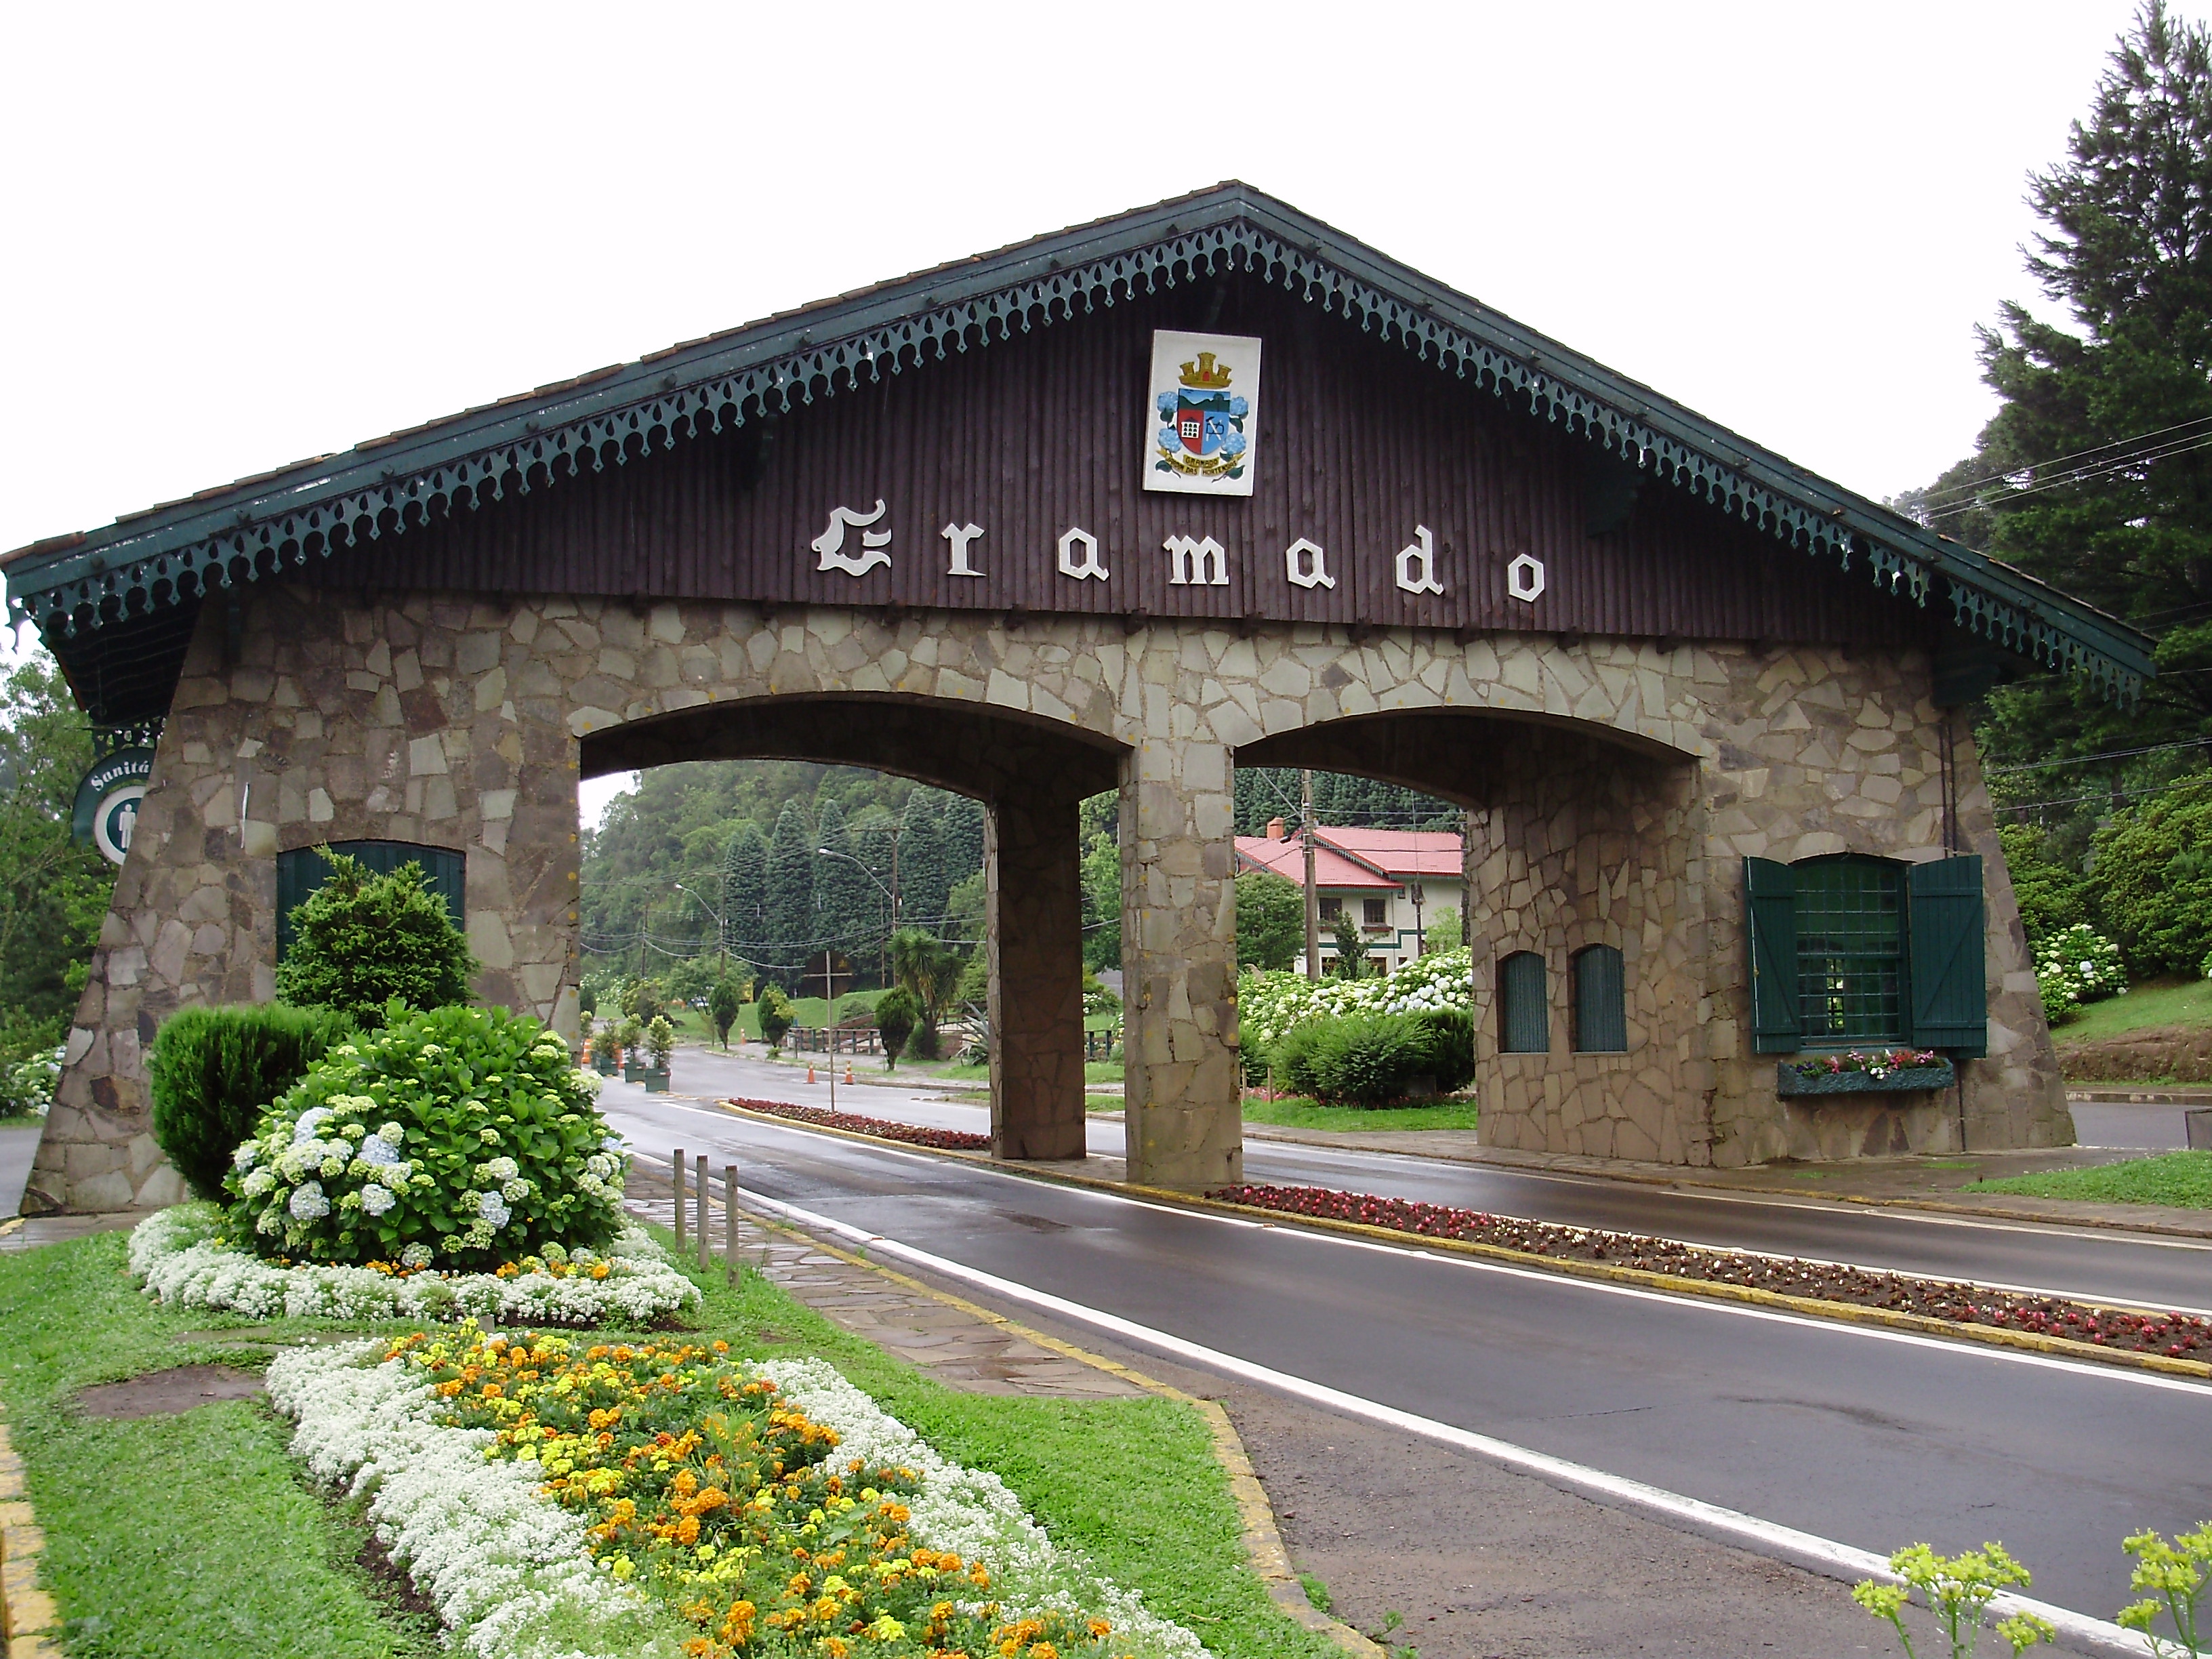 Entrada para Cidade de Gramado - RS